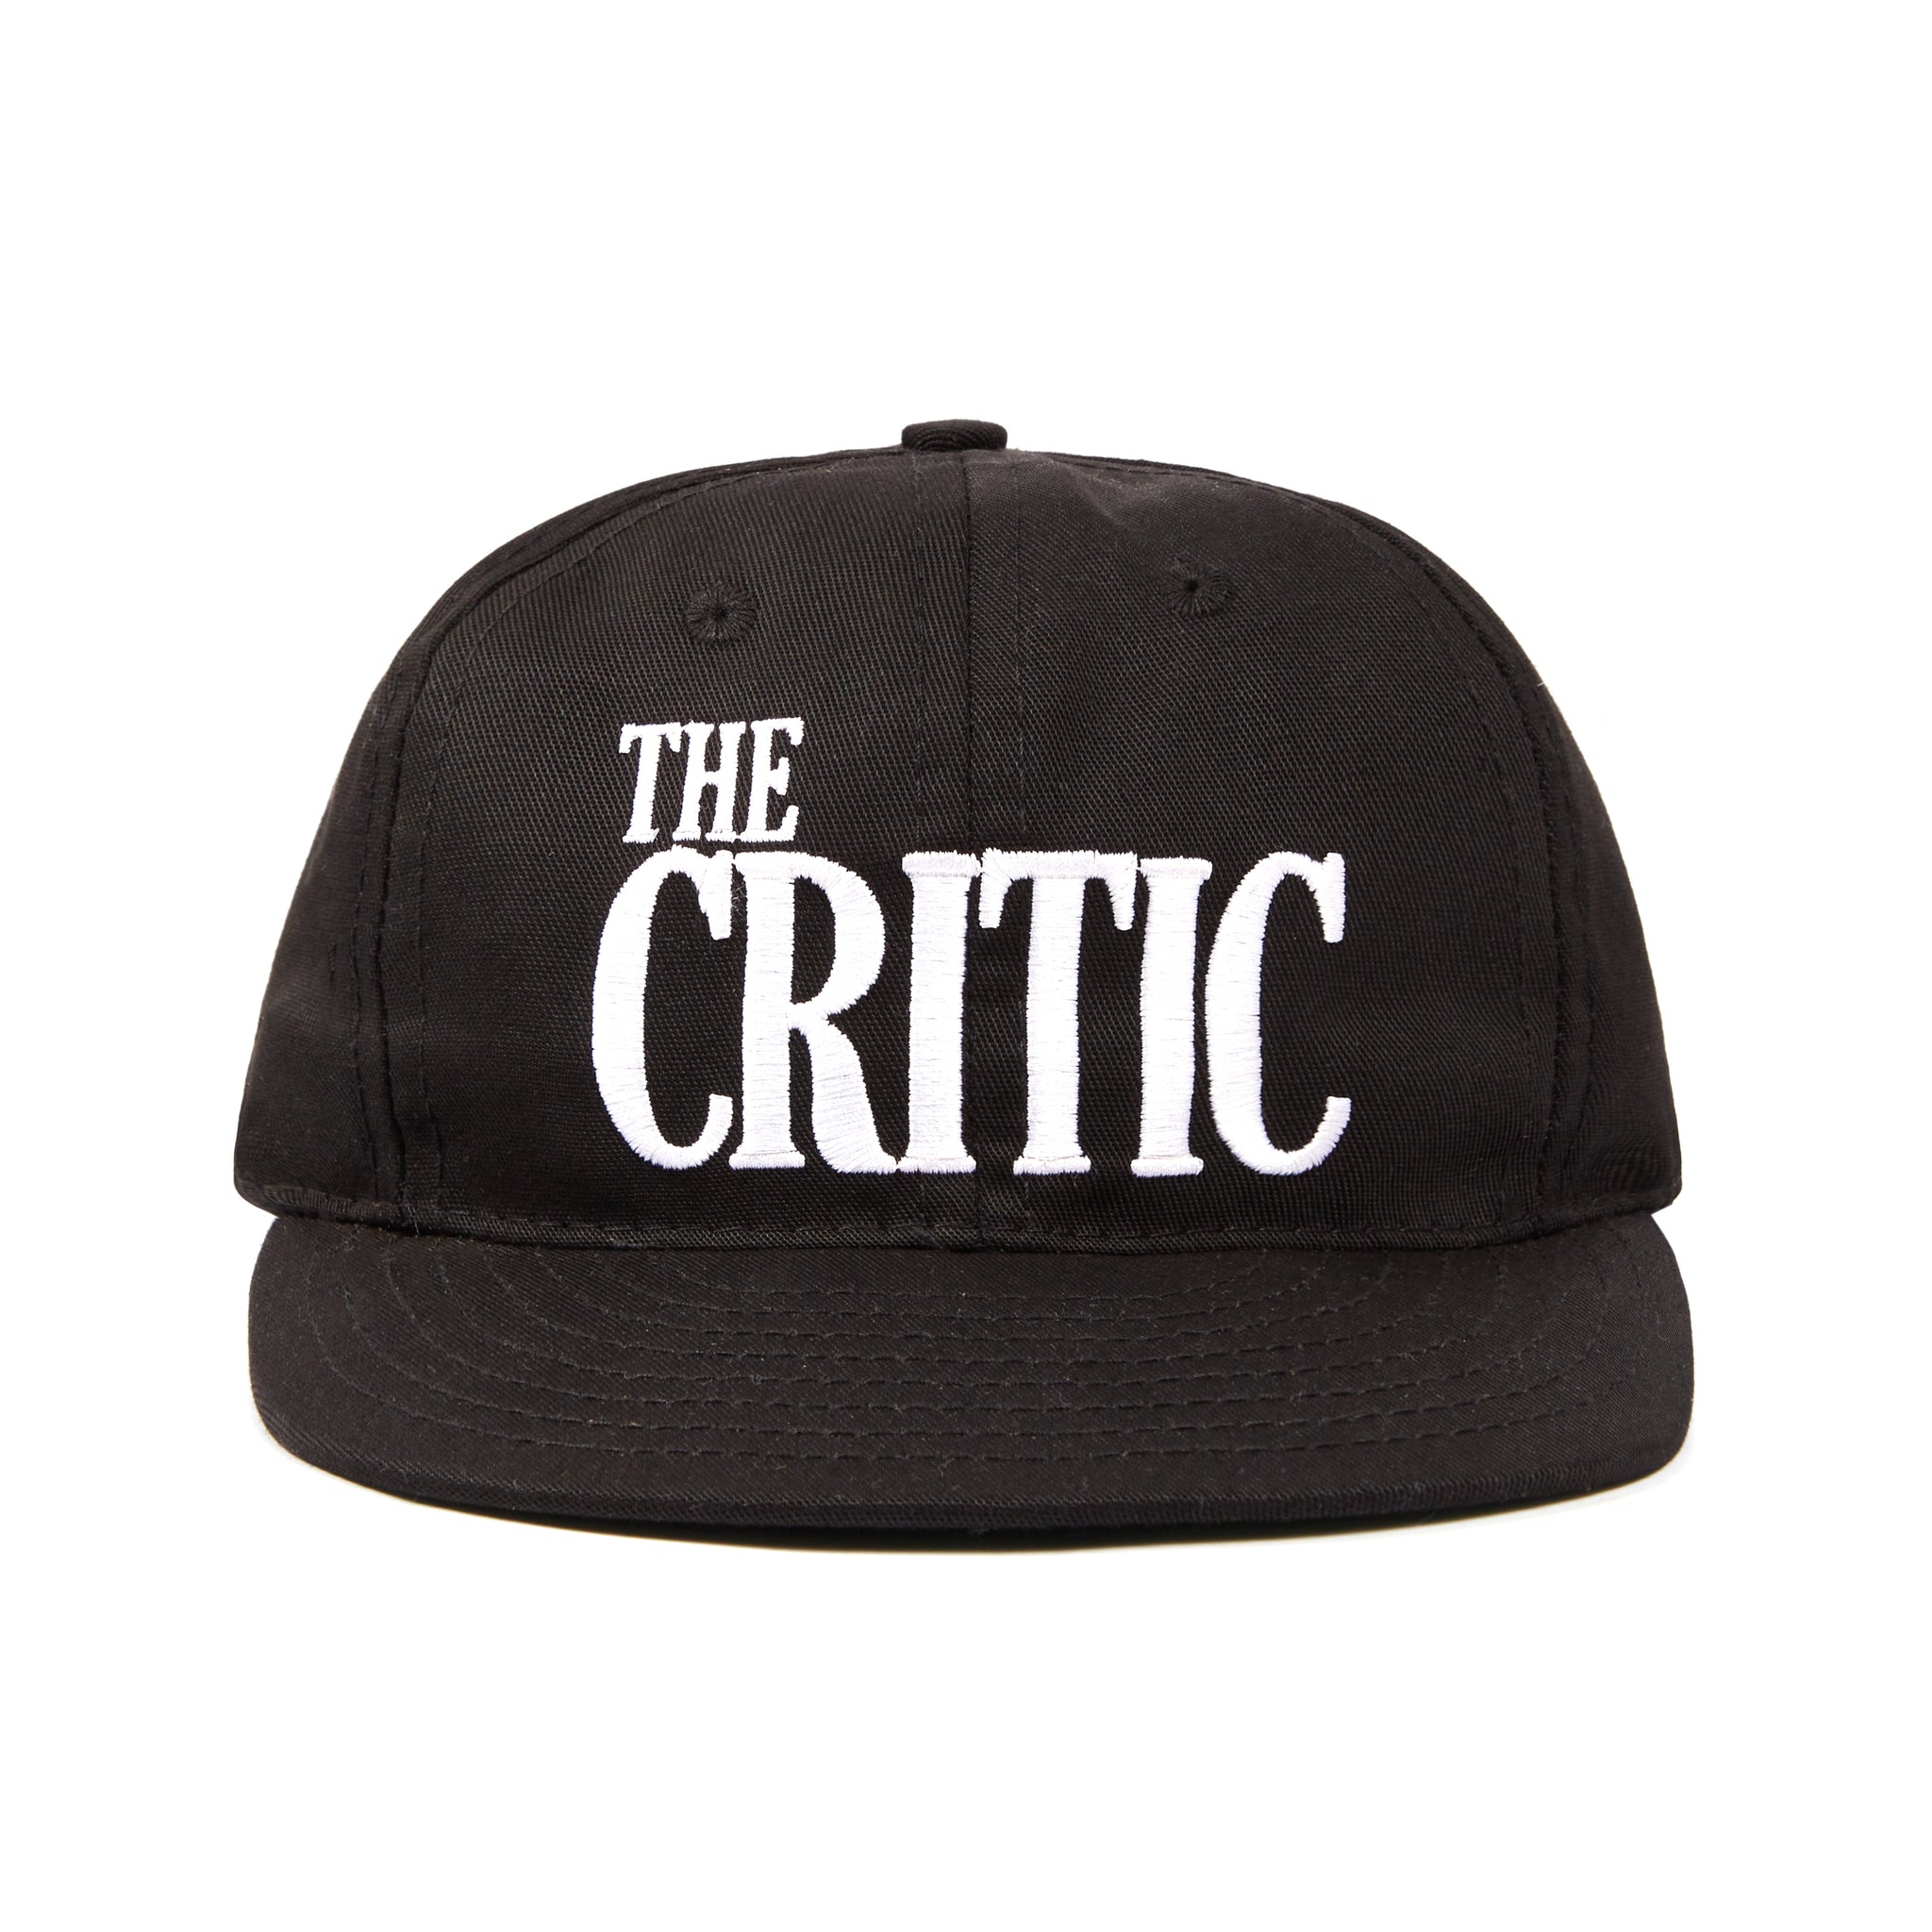 ALLTIMERS - The Critic Ebbets Field Cap "Black"